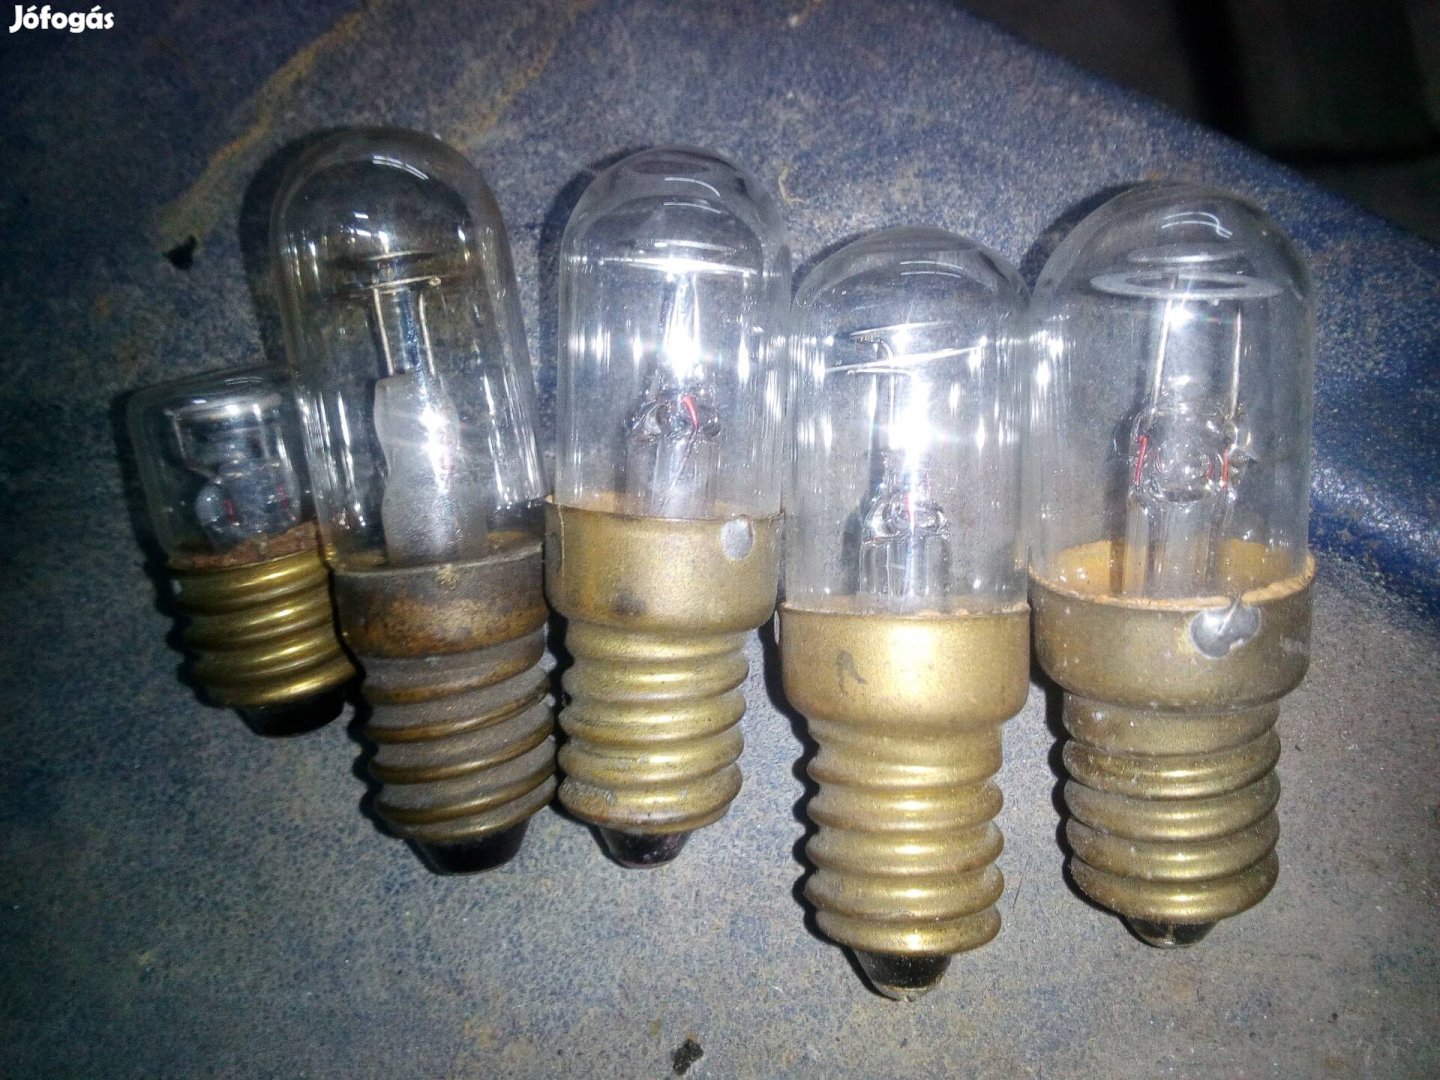 Retro glimm lámpák E14 eladó egytételben.